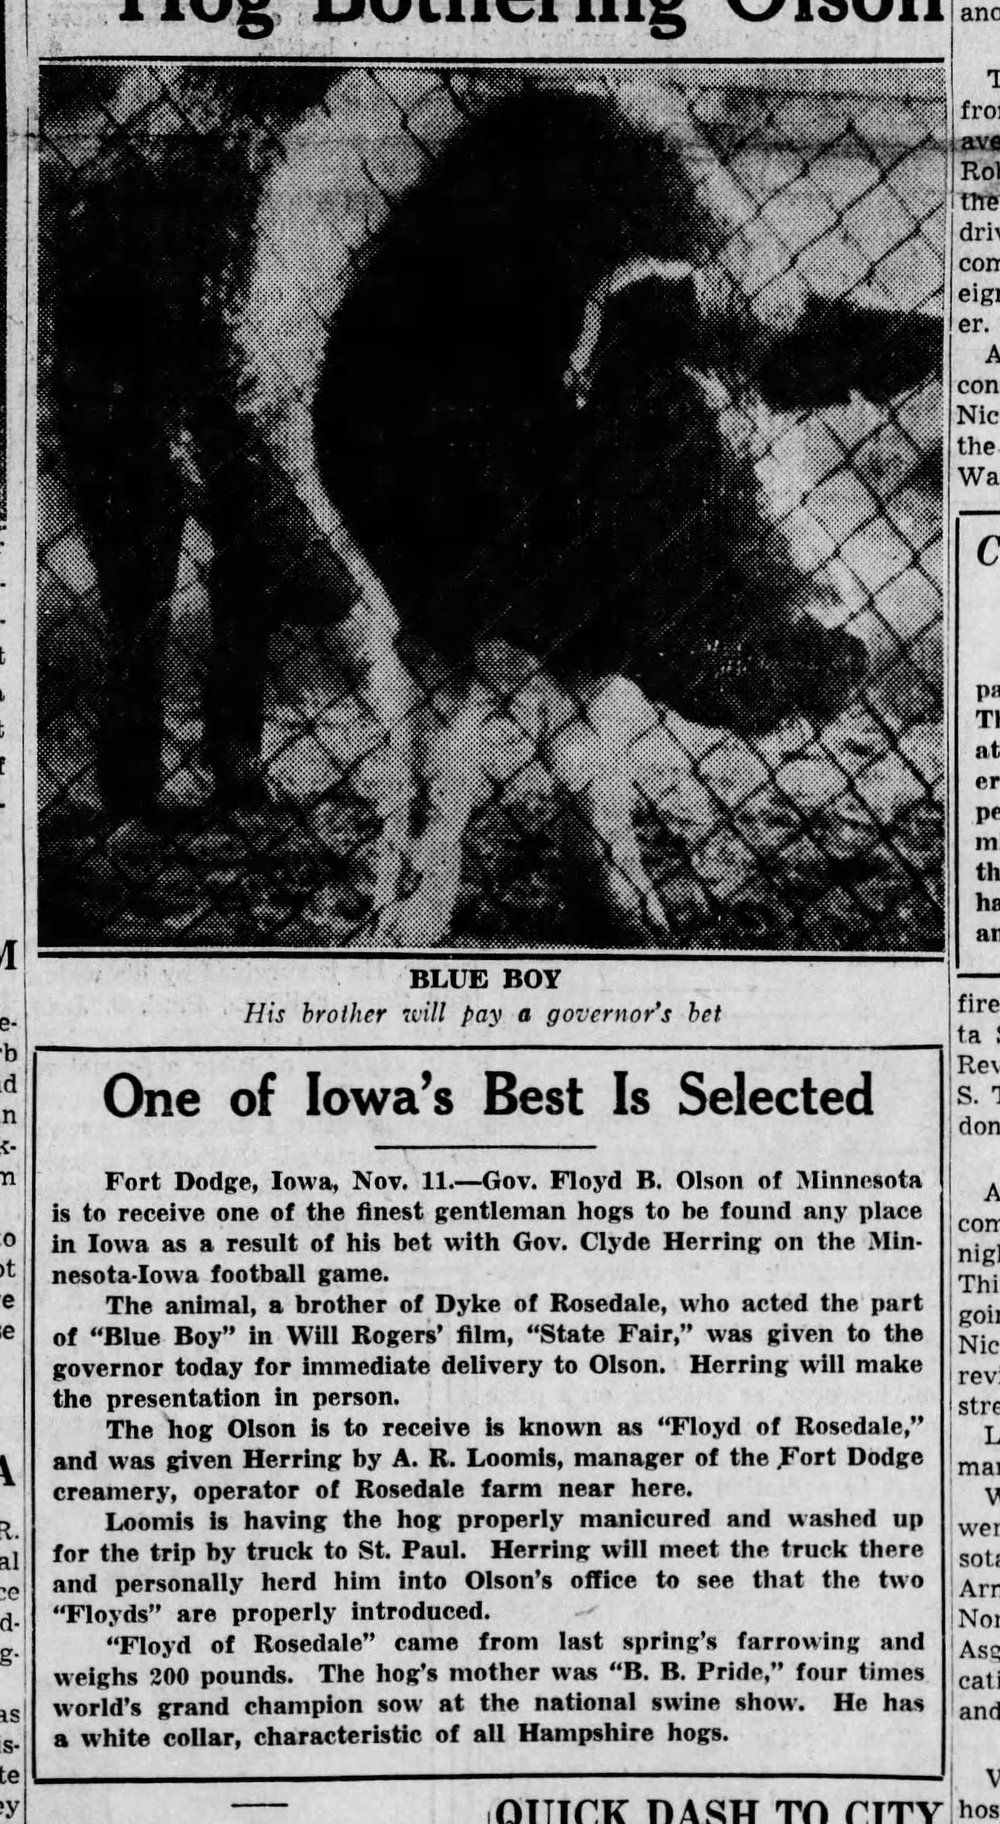 1935 best hog selected.jpg